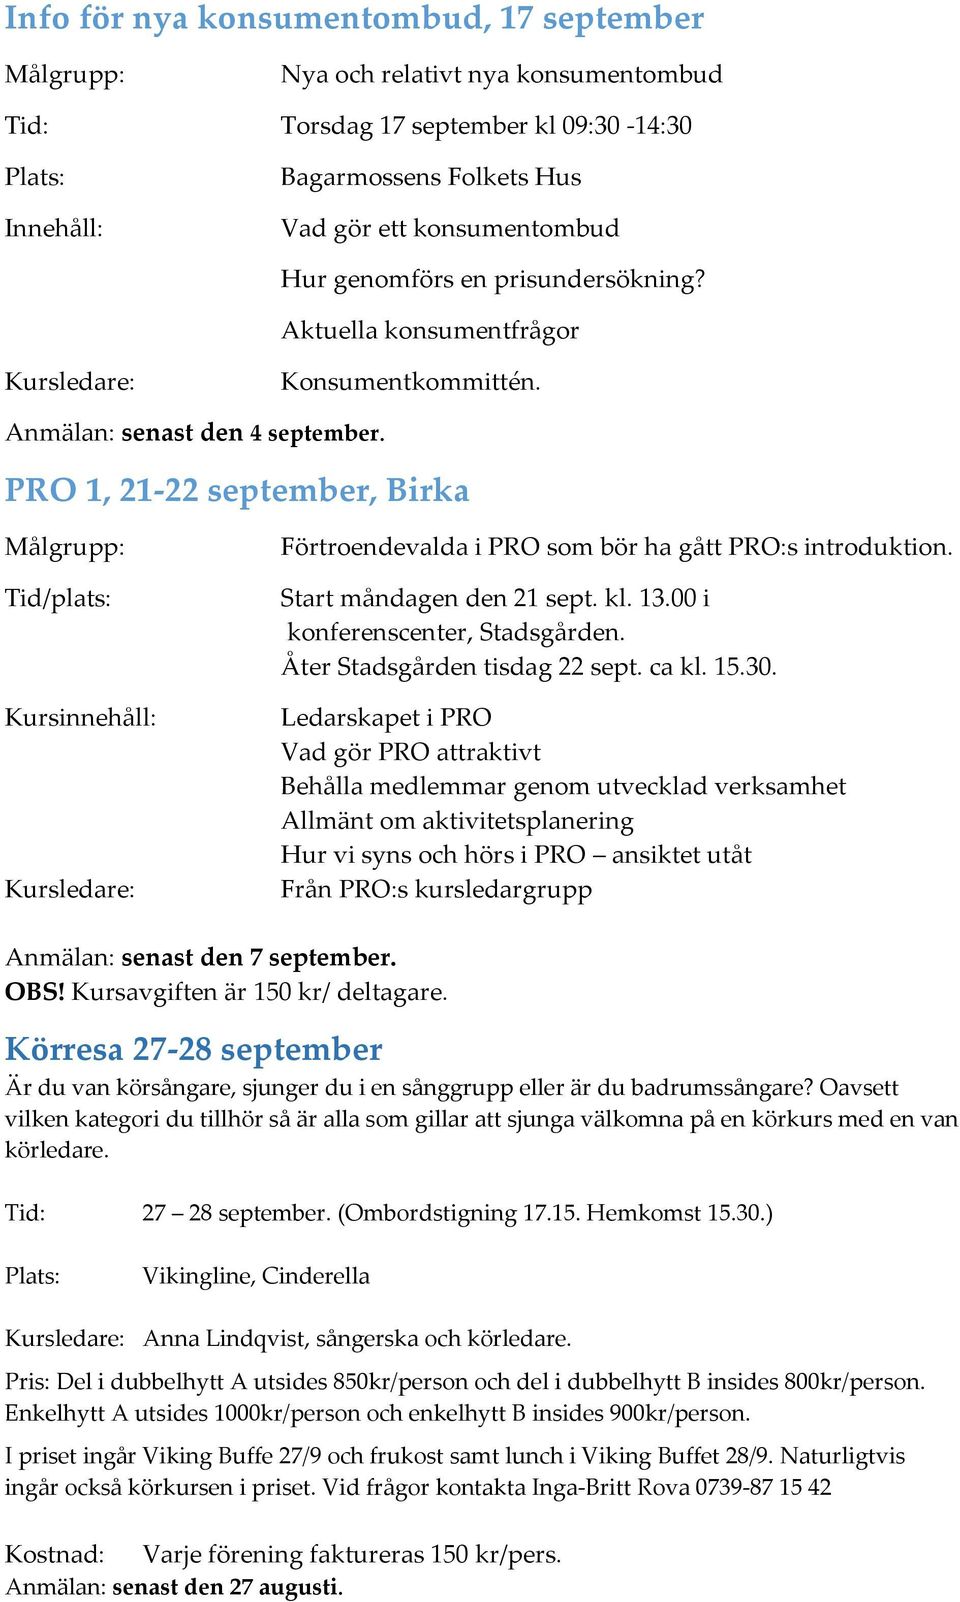 PRO 1, 21-22 september, Birka Tid/plats: Kursinnehåll: Kursledare: Förtroendevalda i PRO som bör ha gått PRO:s introduktion. Start måndagen den 21 sept. kl. 13.00 i konferenscenter, Stadsgården.